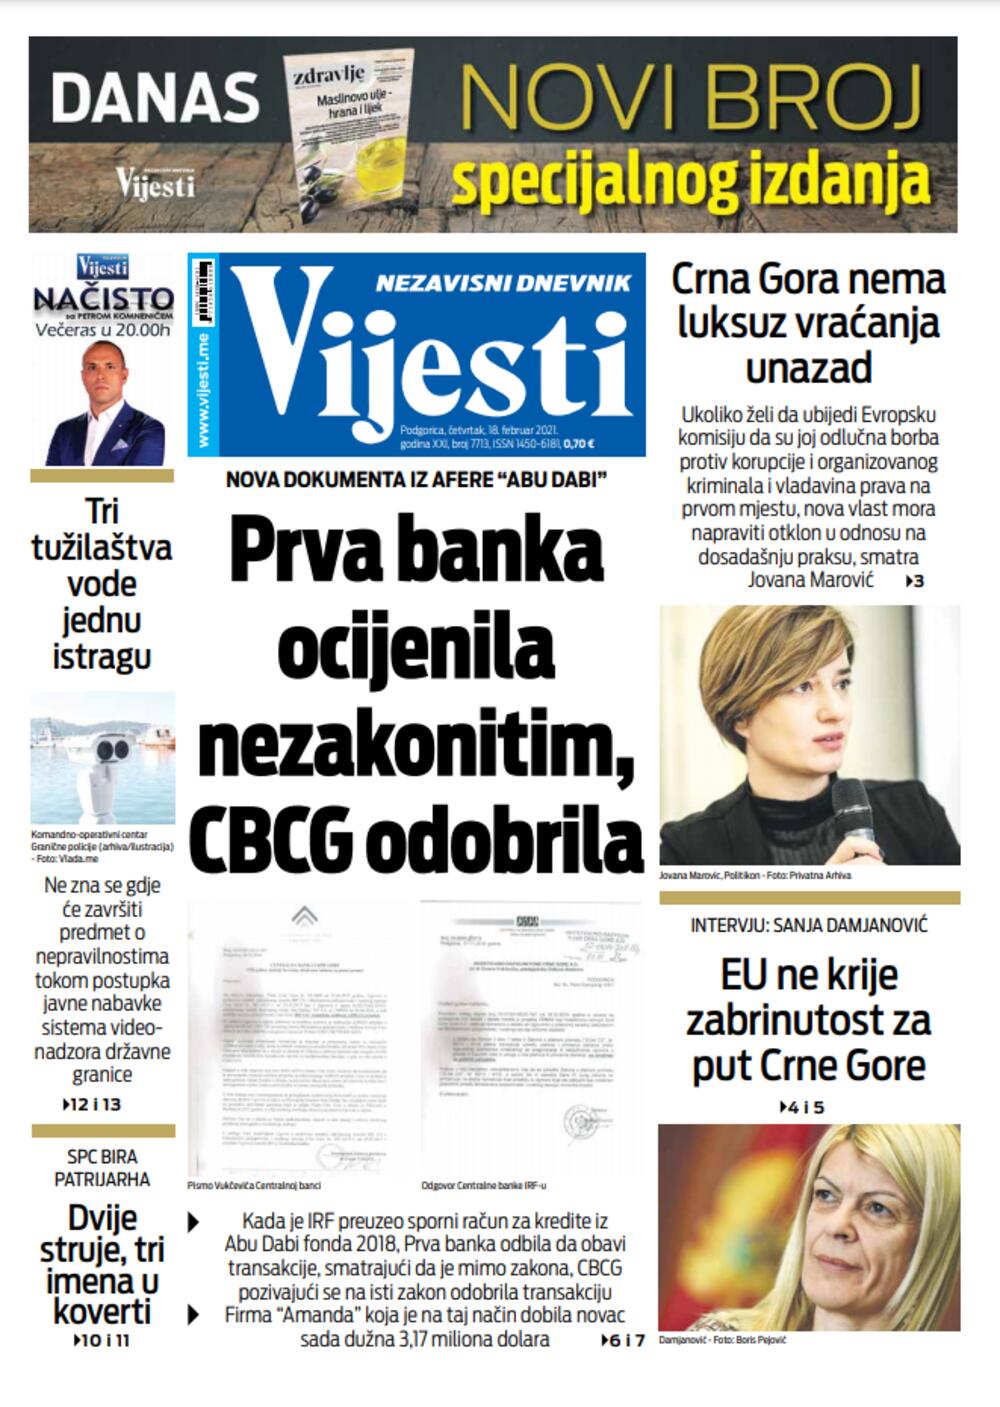 Naslovna strana "Vijesti" za četvrtak 18. februar 2021. godine, Foto: Vijesti